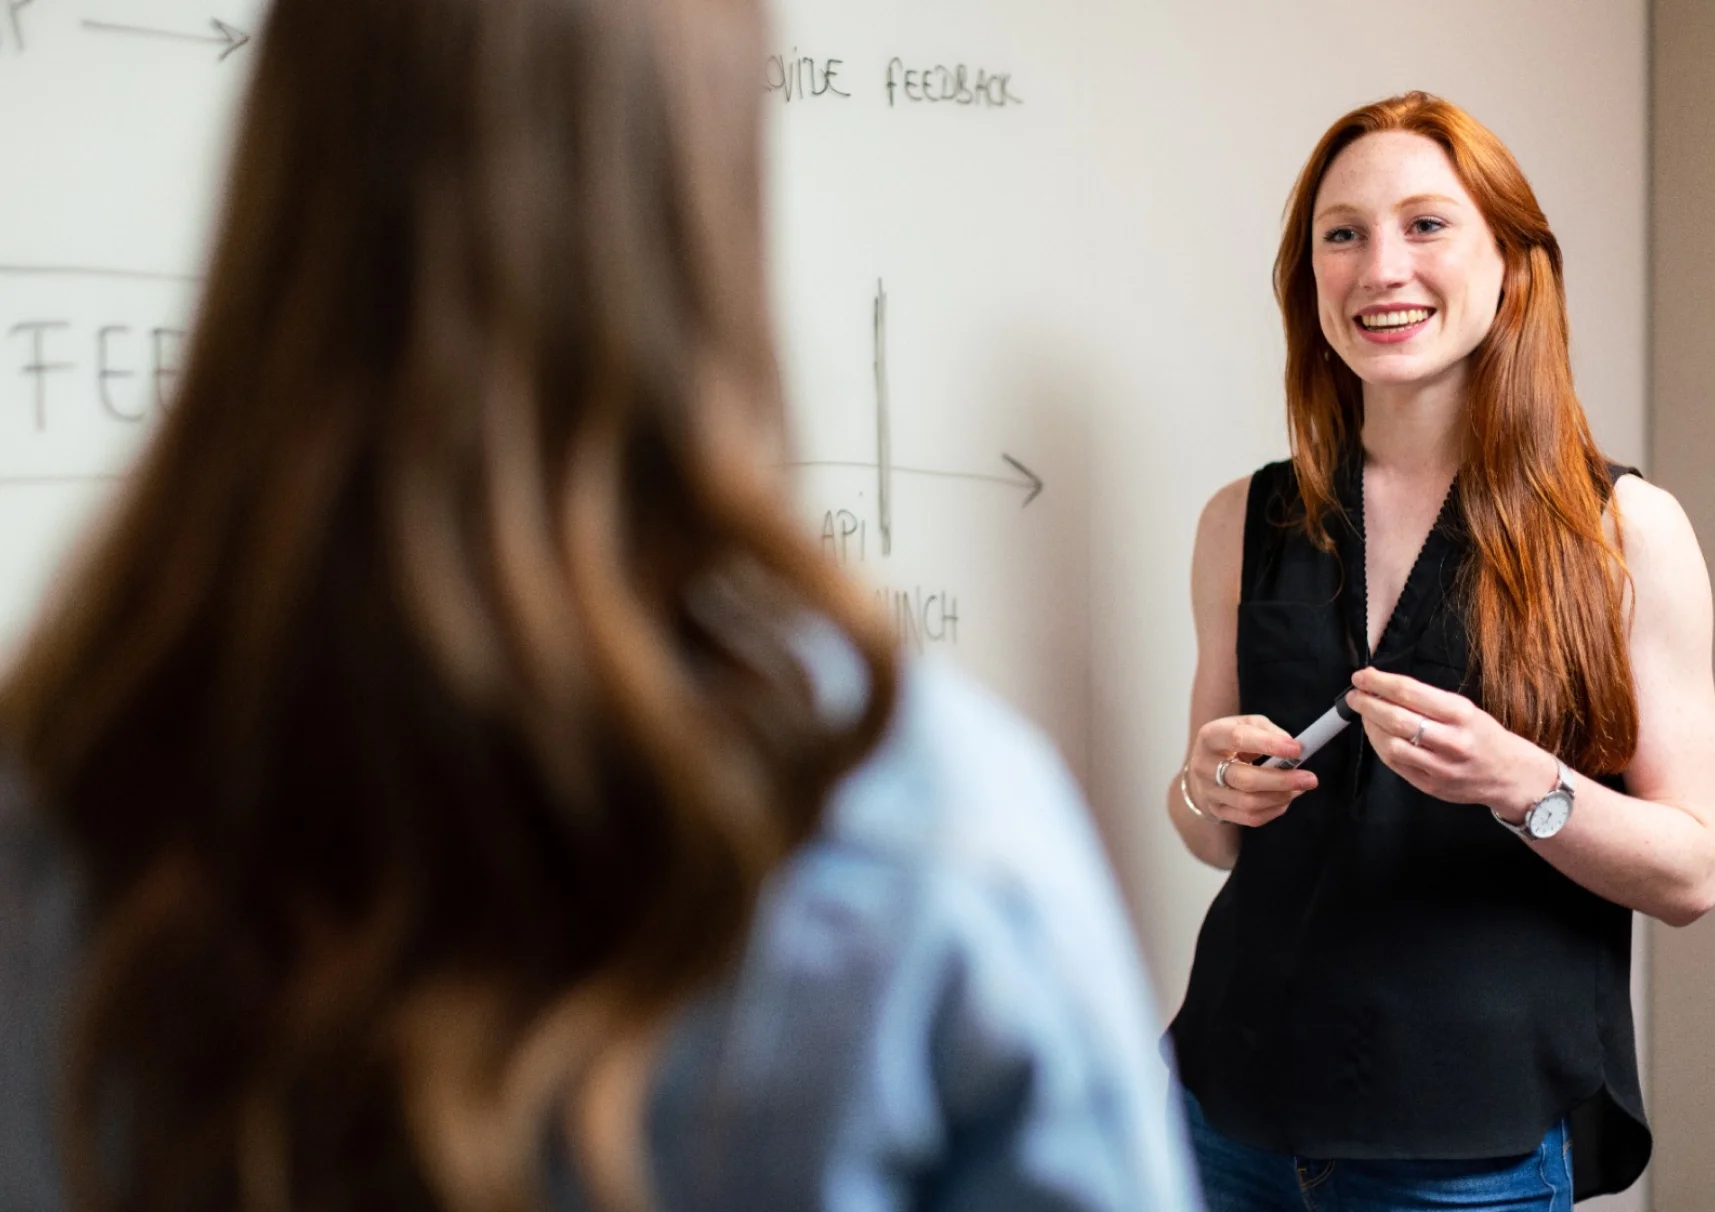 une enseignante aux cheveux roux sourit à un étudiant debout devant un tableau noir